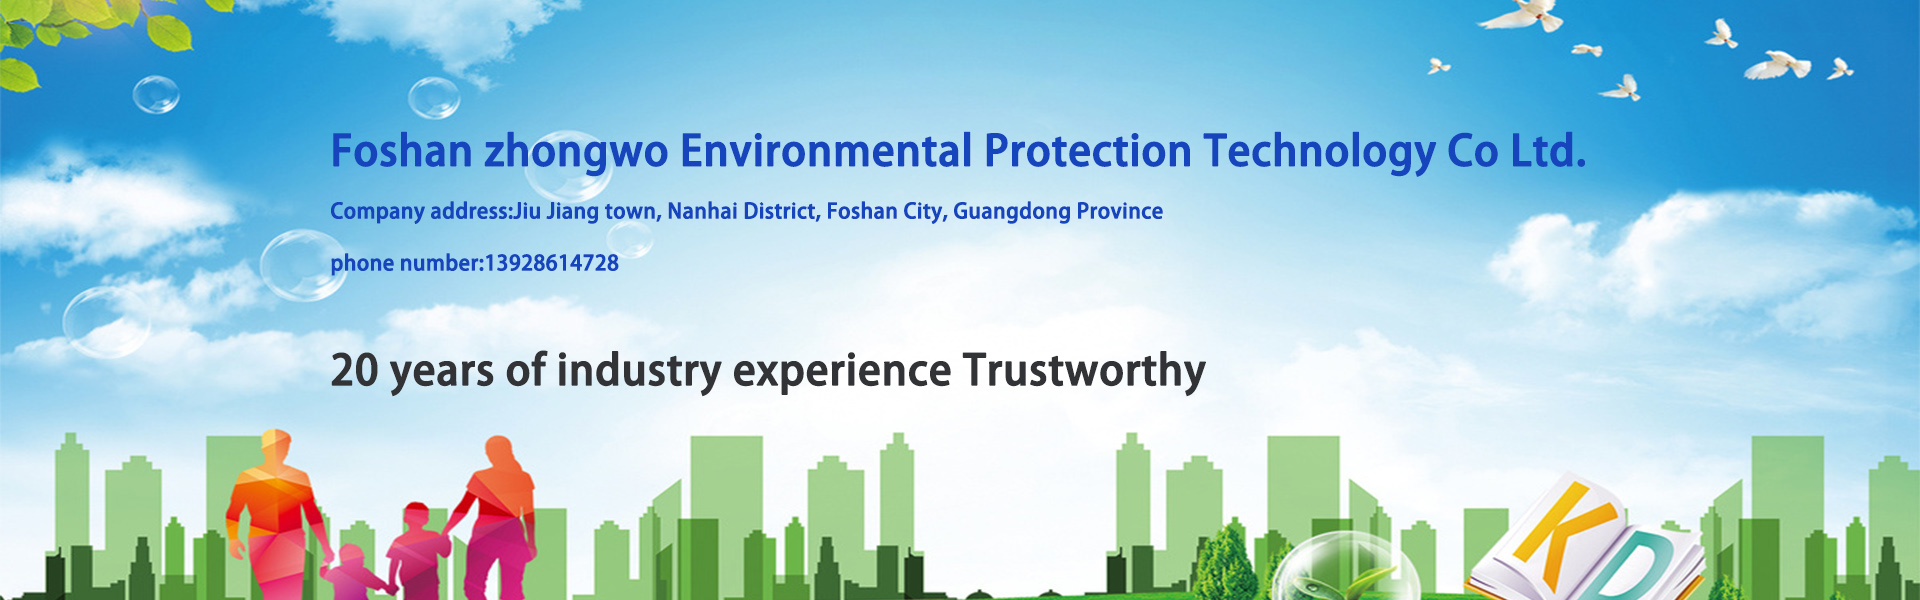 εξοπλισμός επεξεργασίας νερού, εξοπλισμός καθαρισμού νερού, εξοπλισμός προστασίας του περιβάλλοντος,Foshan zhongwo Environmental Protection Technology Co Ltd.